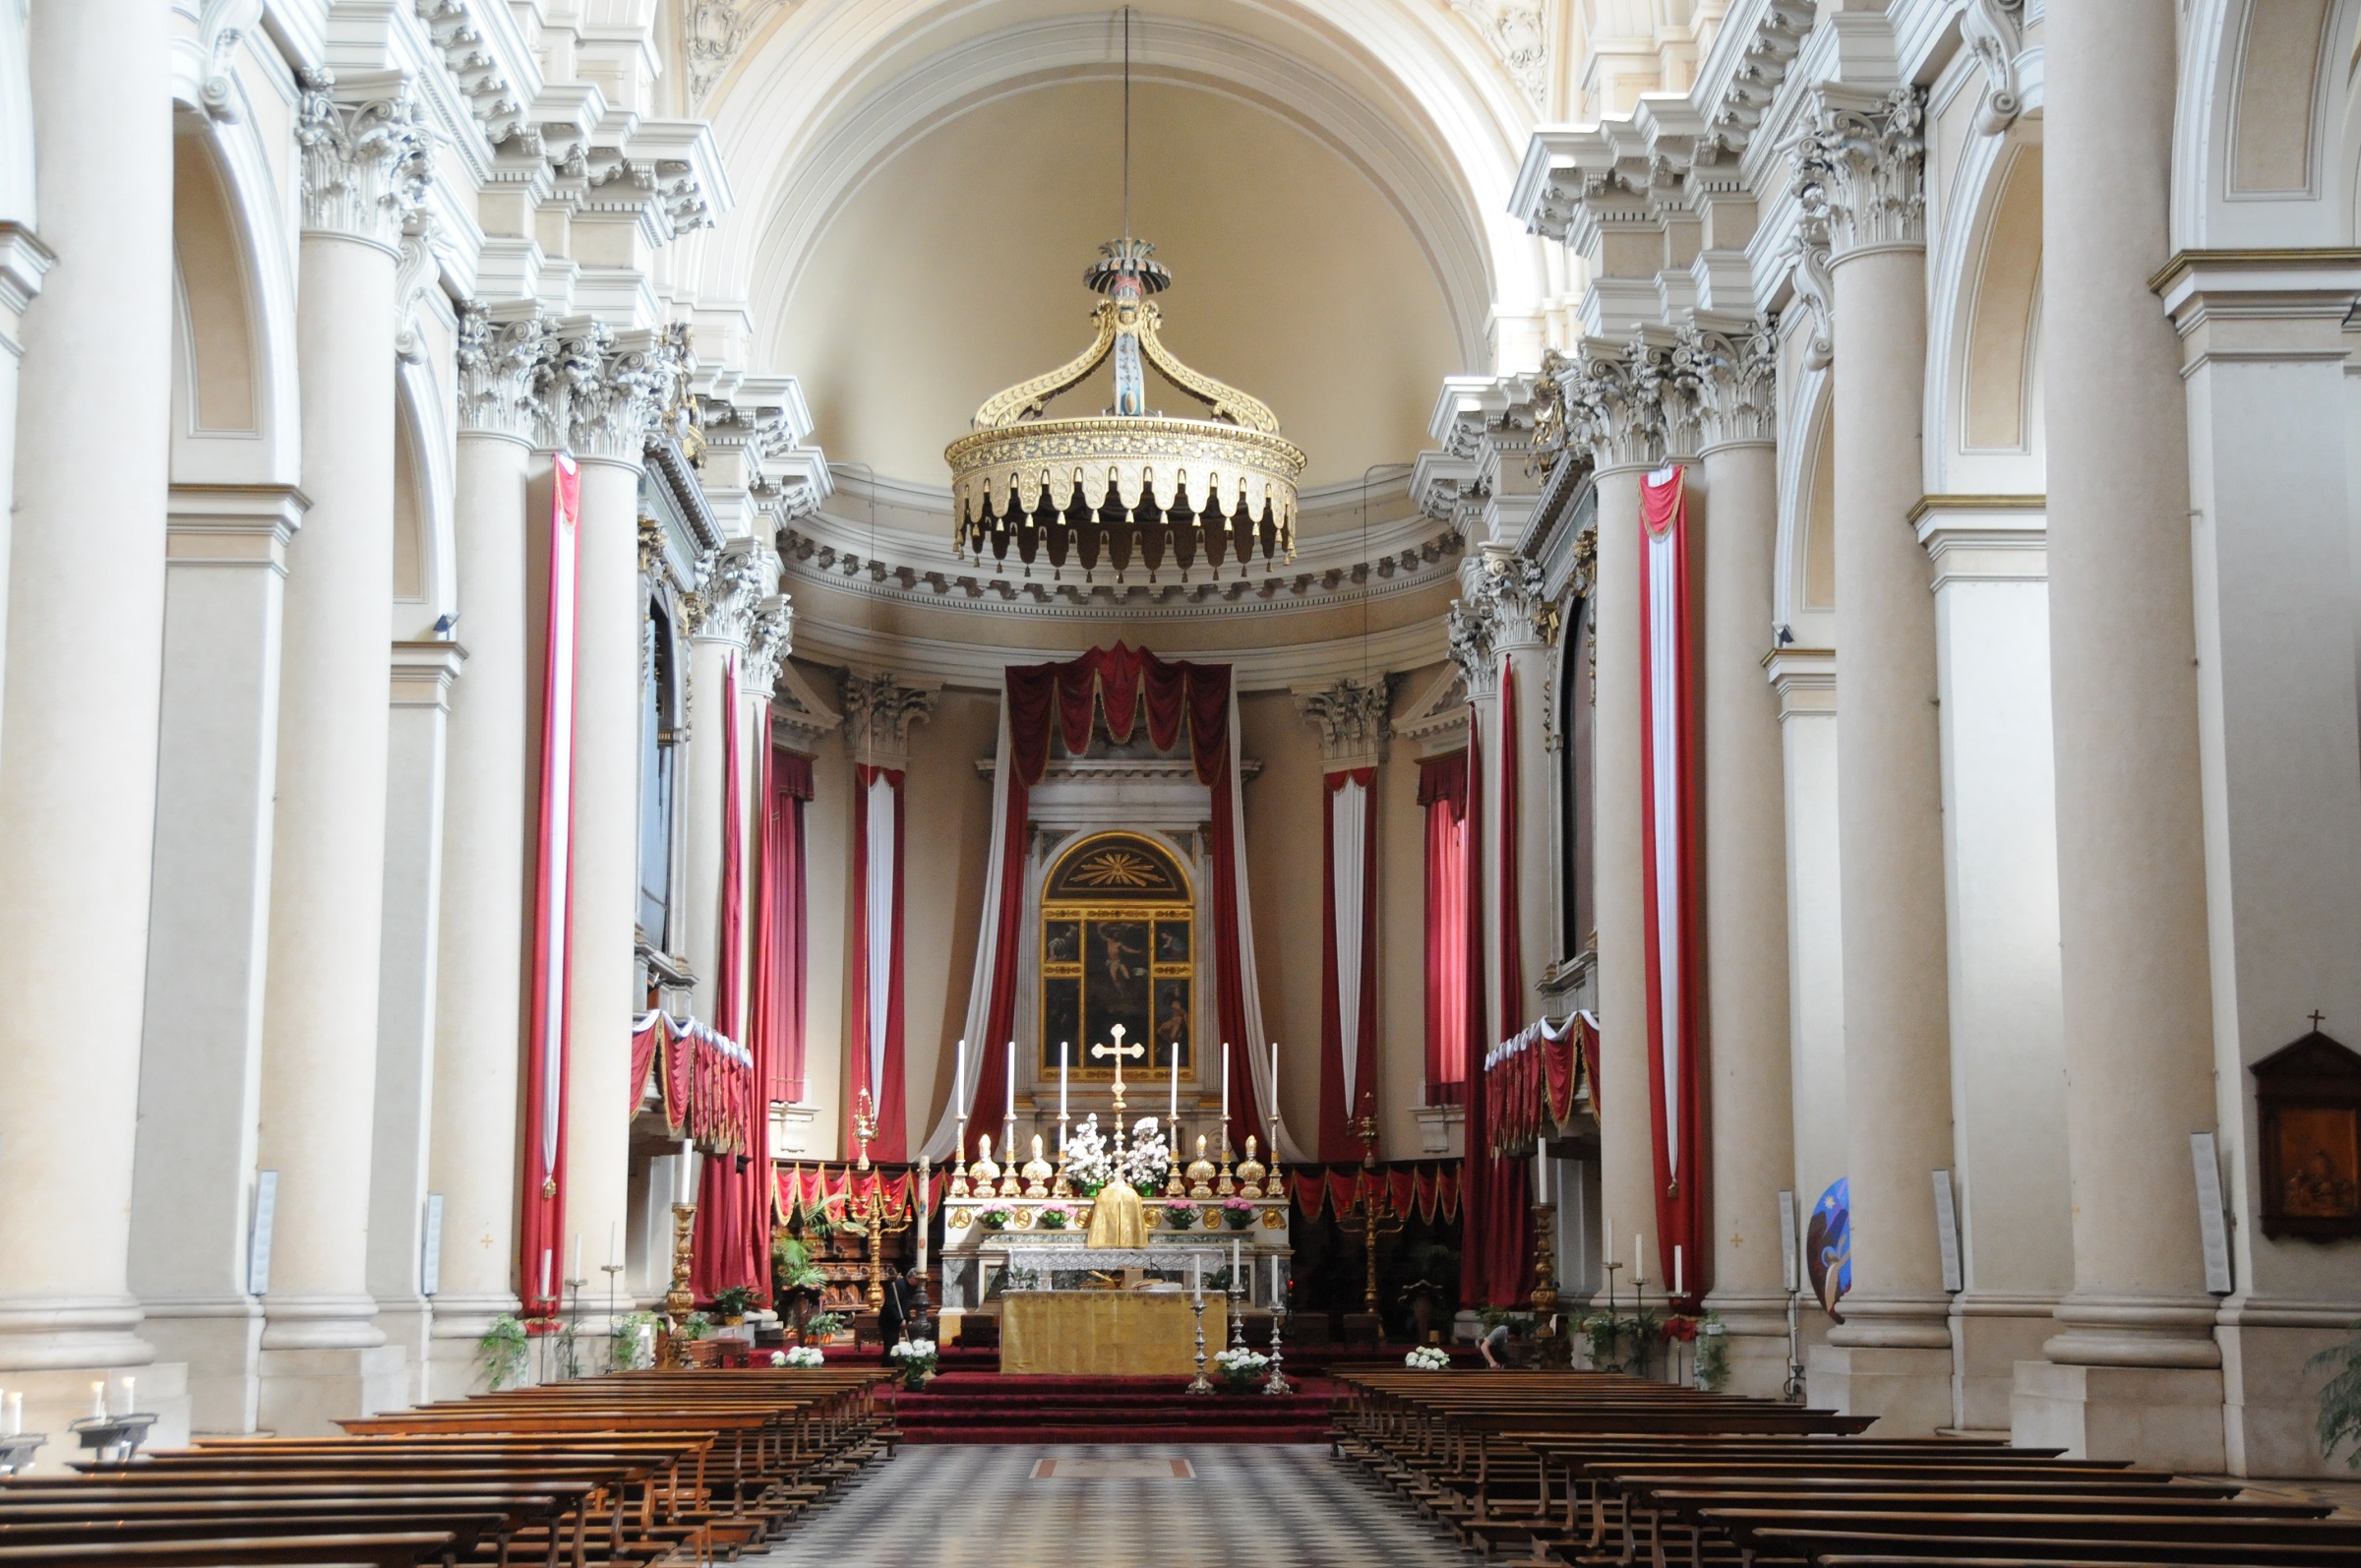 Chiesa dei Santi Nazaro e Celso, Brescia